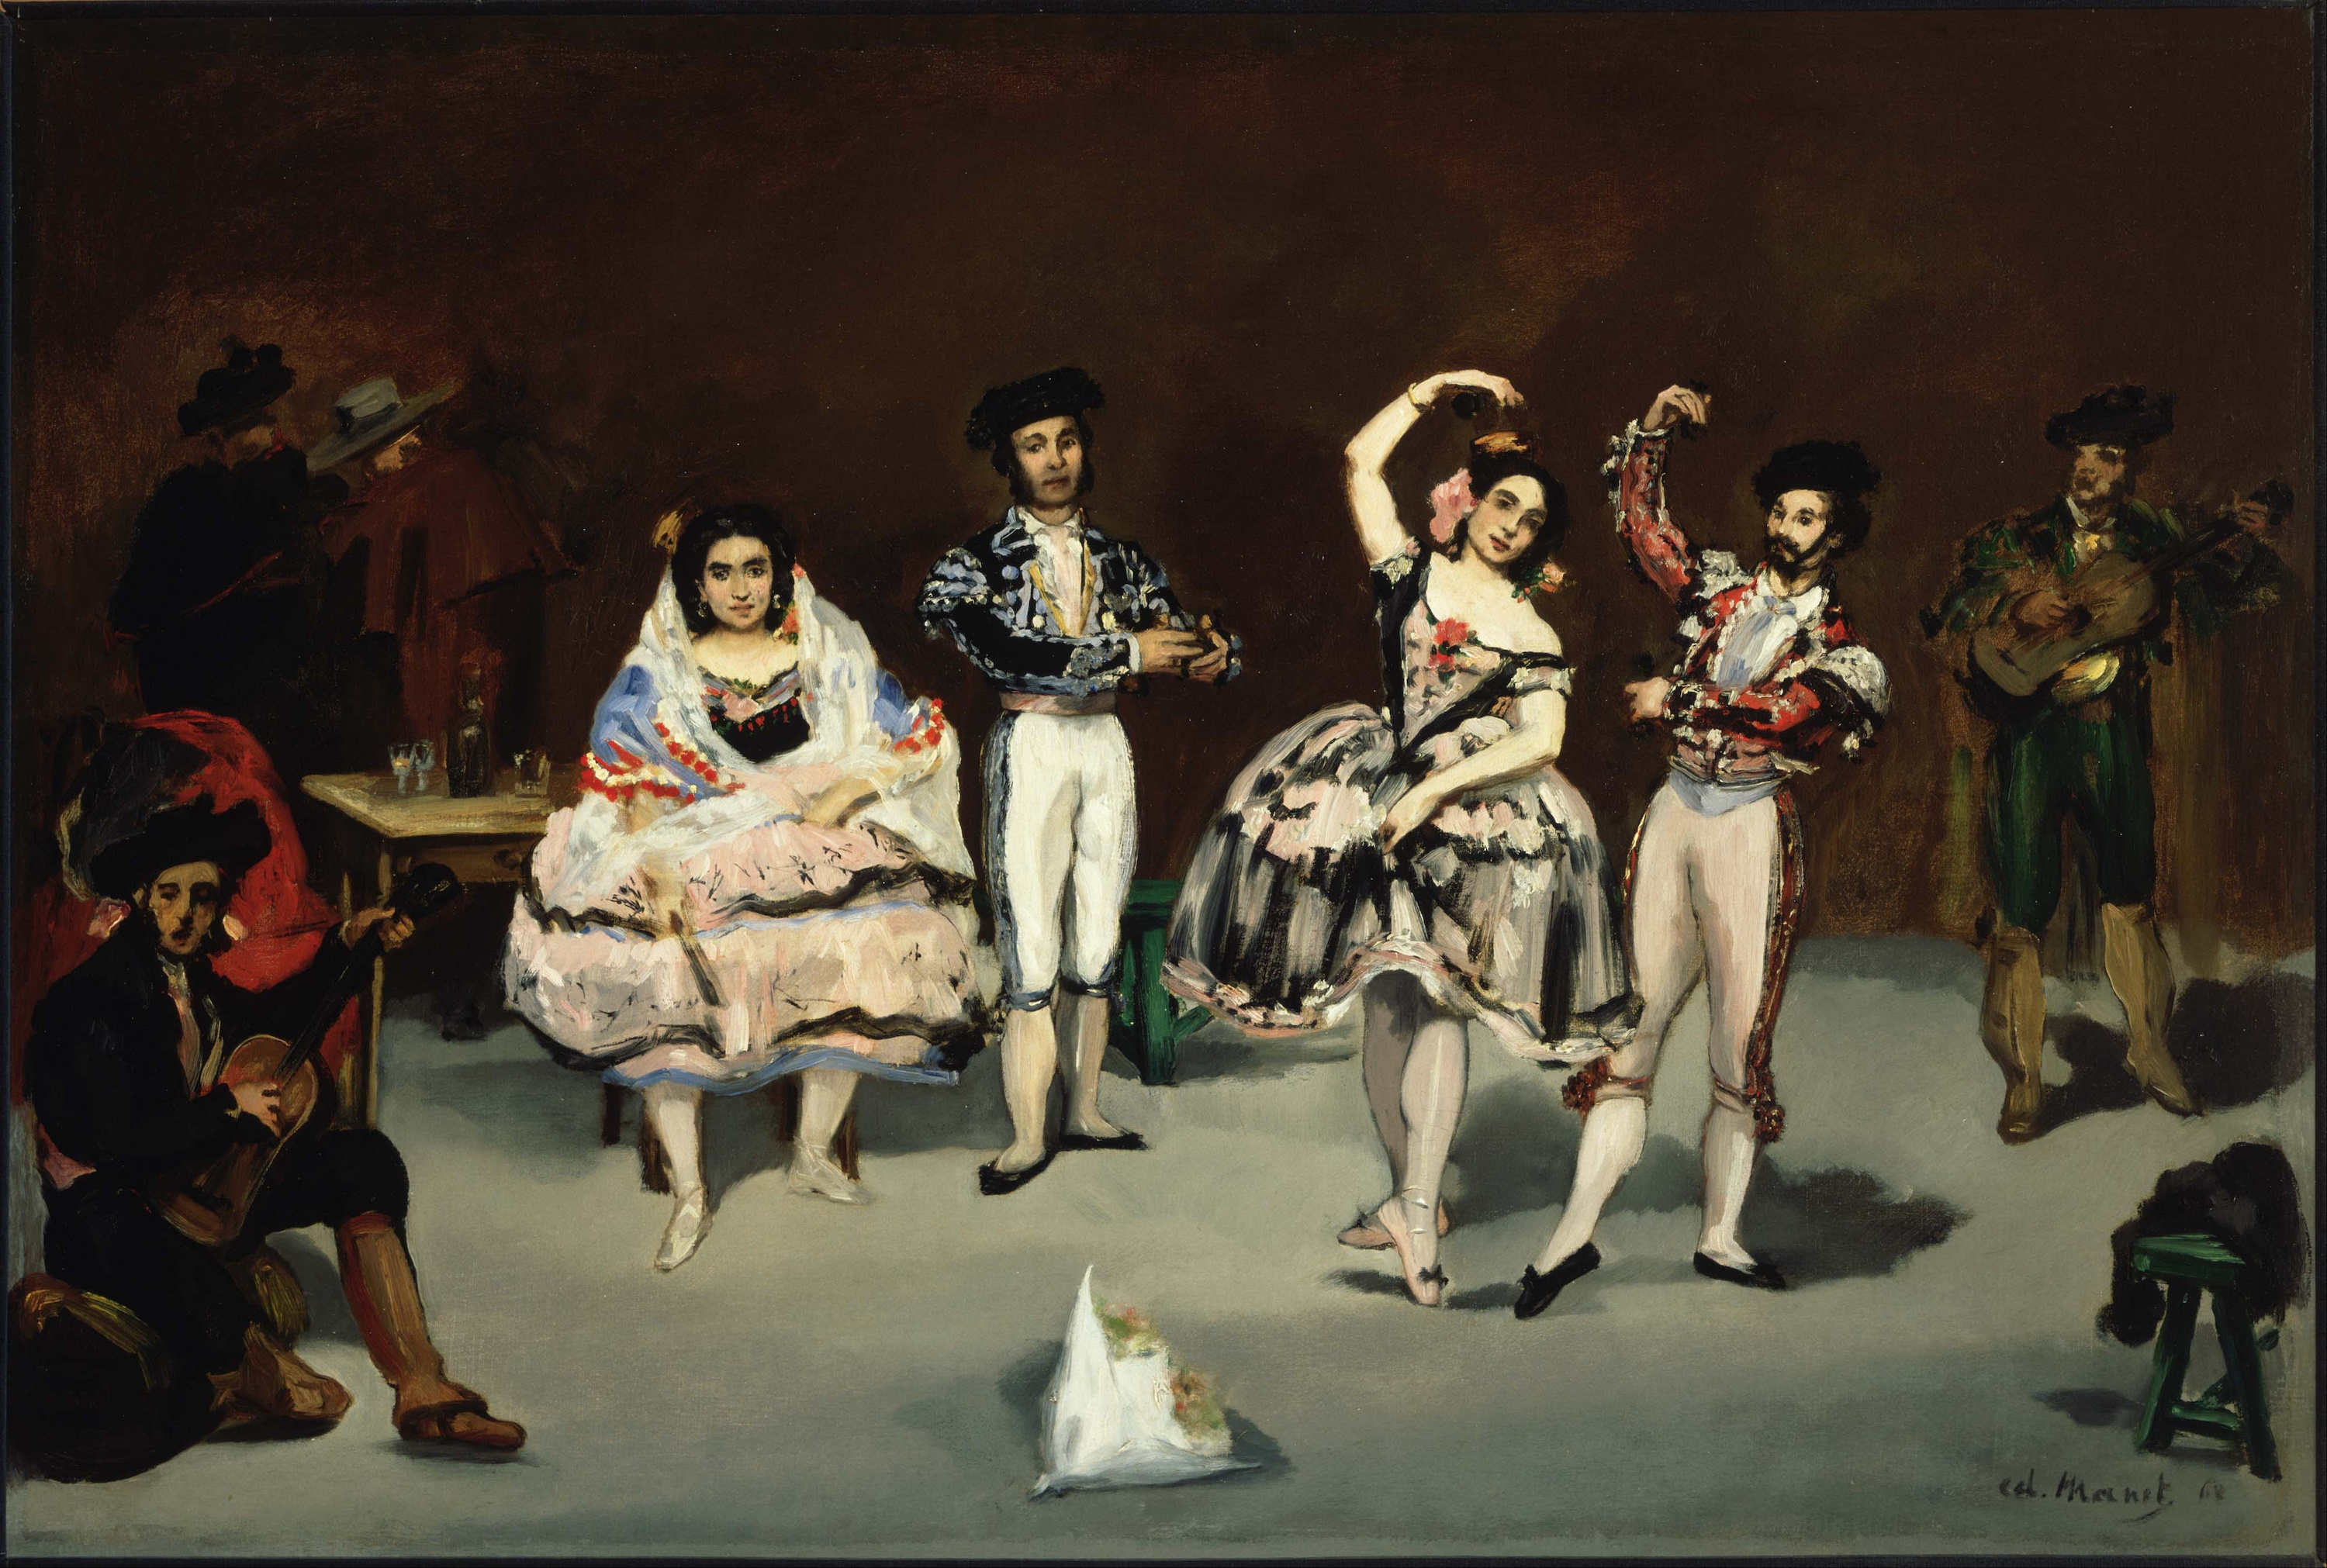 Іспанський балет by Édouard Manet - 1862 - 35.63 x 24 дюйми 